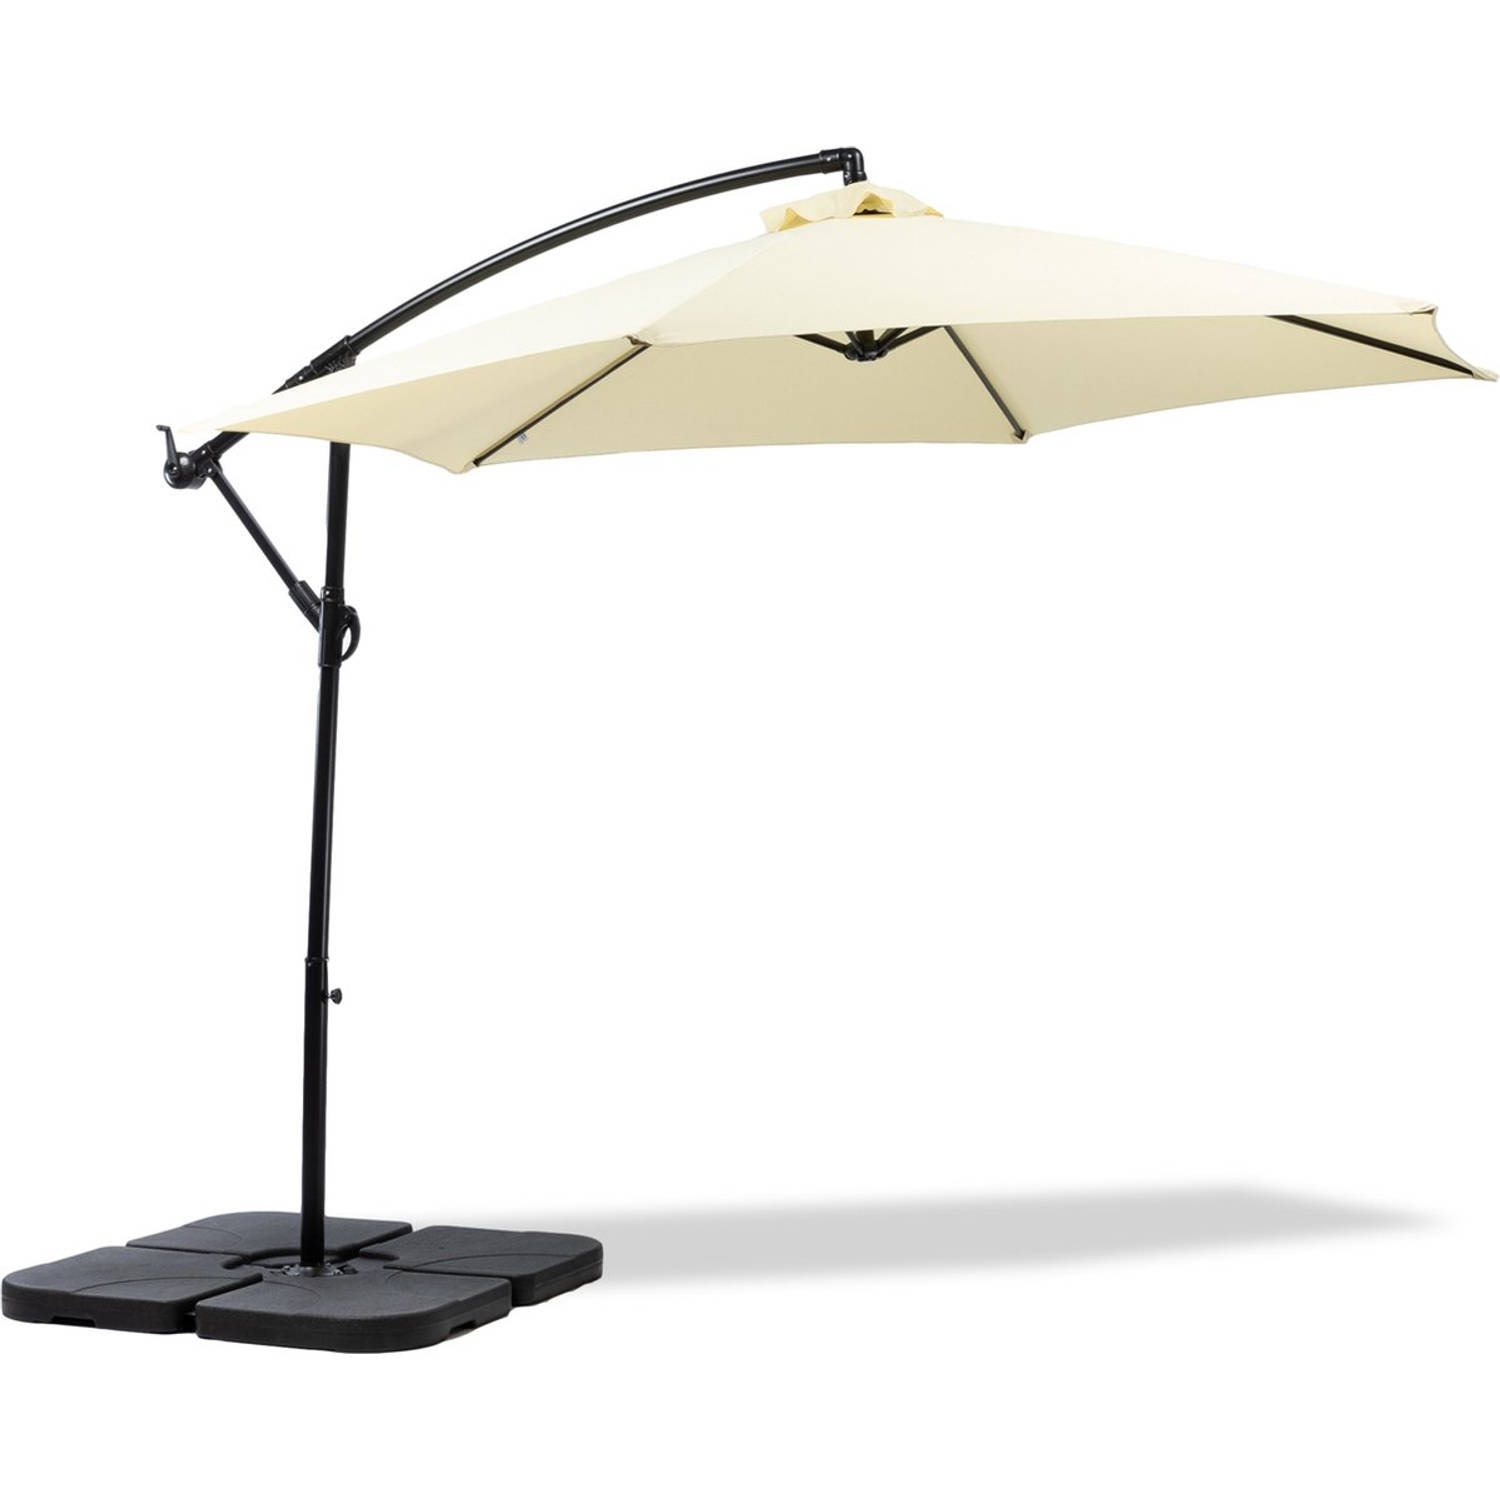 MaxxGarden Deluxe - Duurzame zweefparasol - Ø300 cm - Inclusief vulbare tegels en extra parasolhoes- beige - Kantelbaar - 3 meter doorsnede - Creme